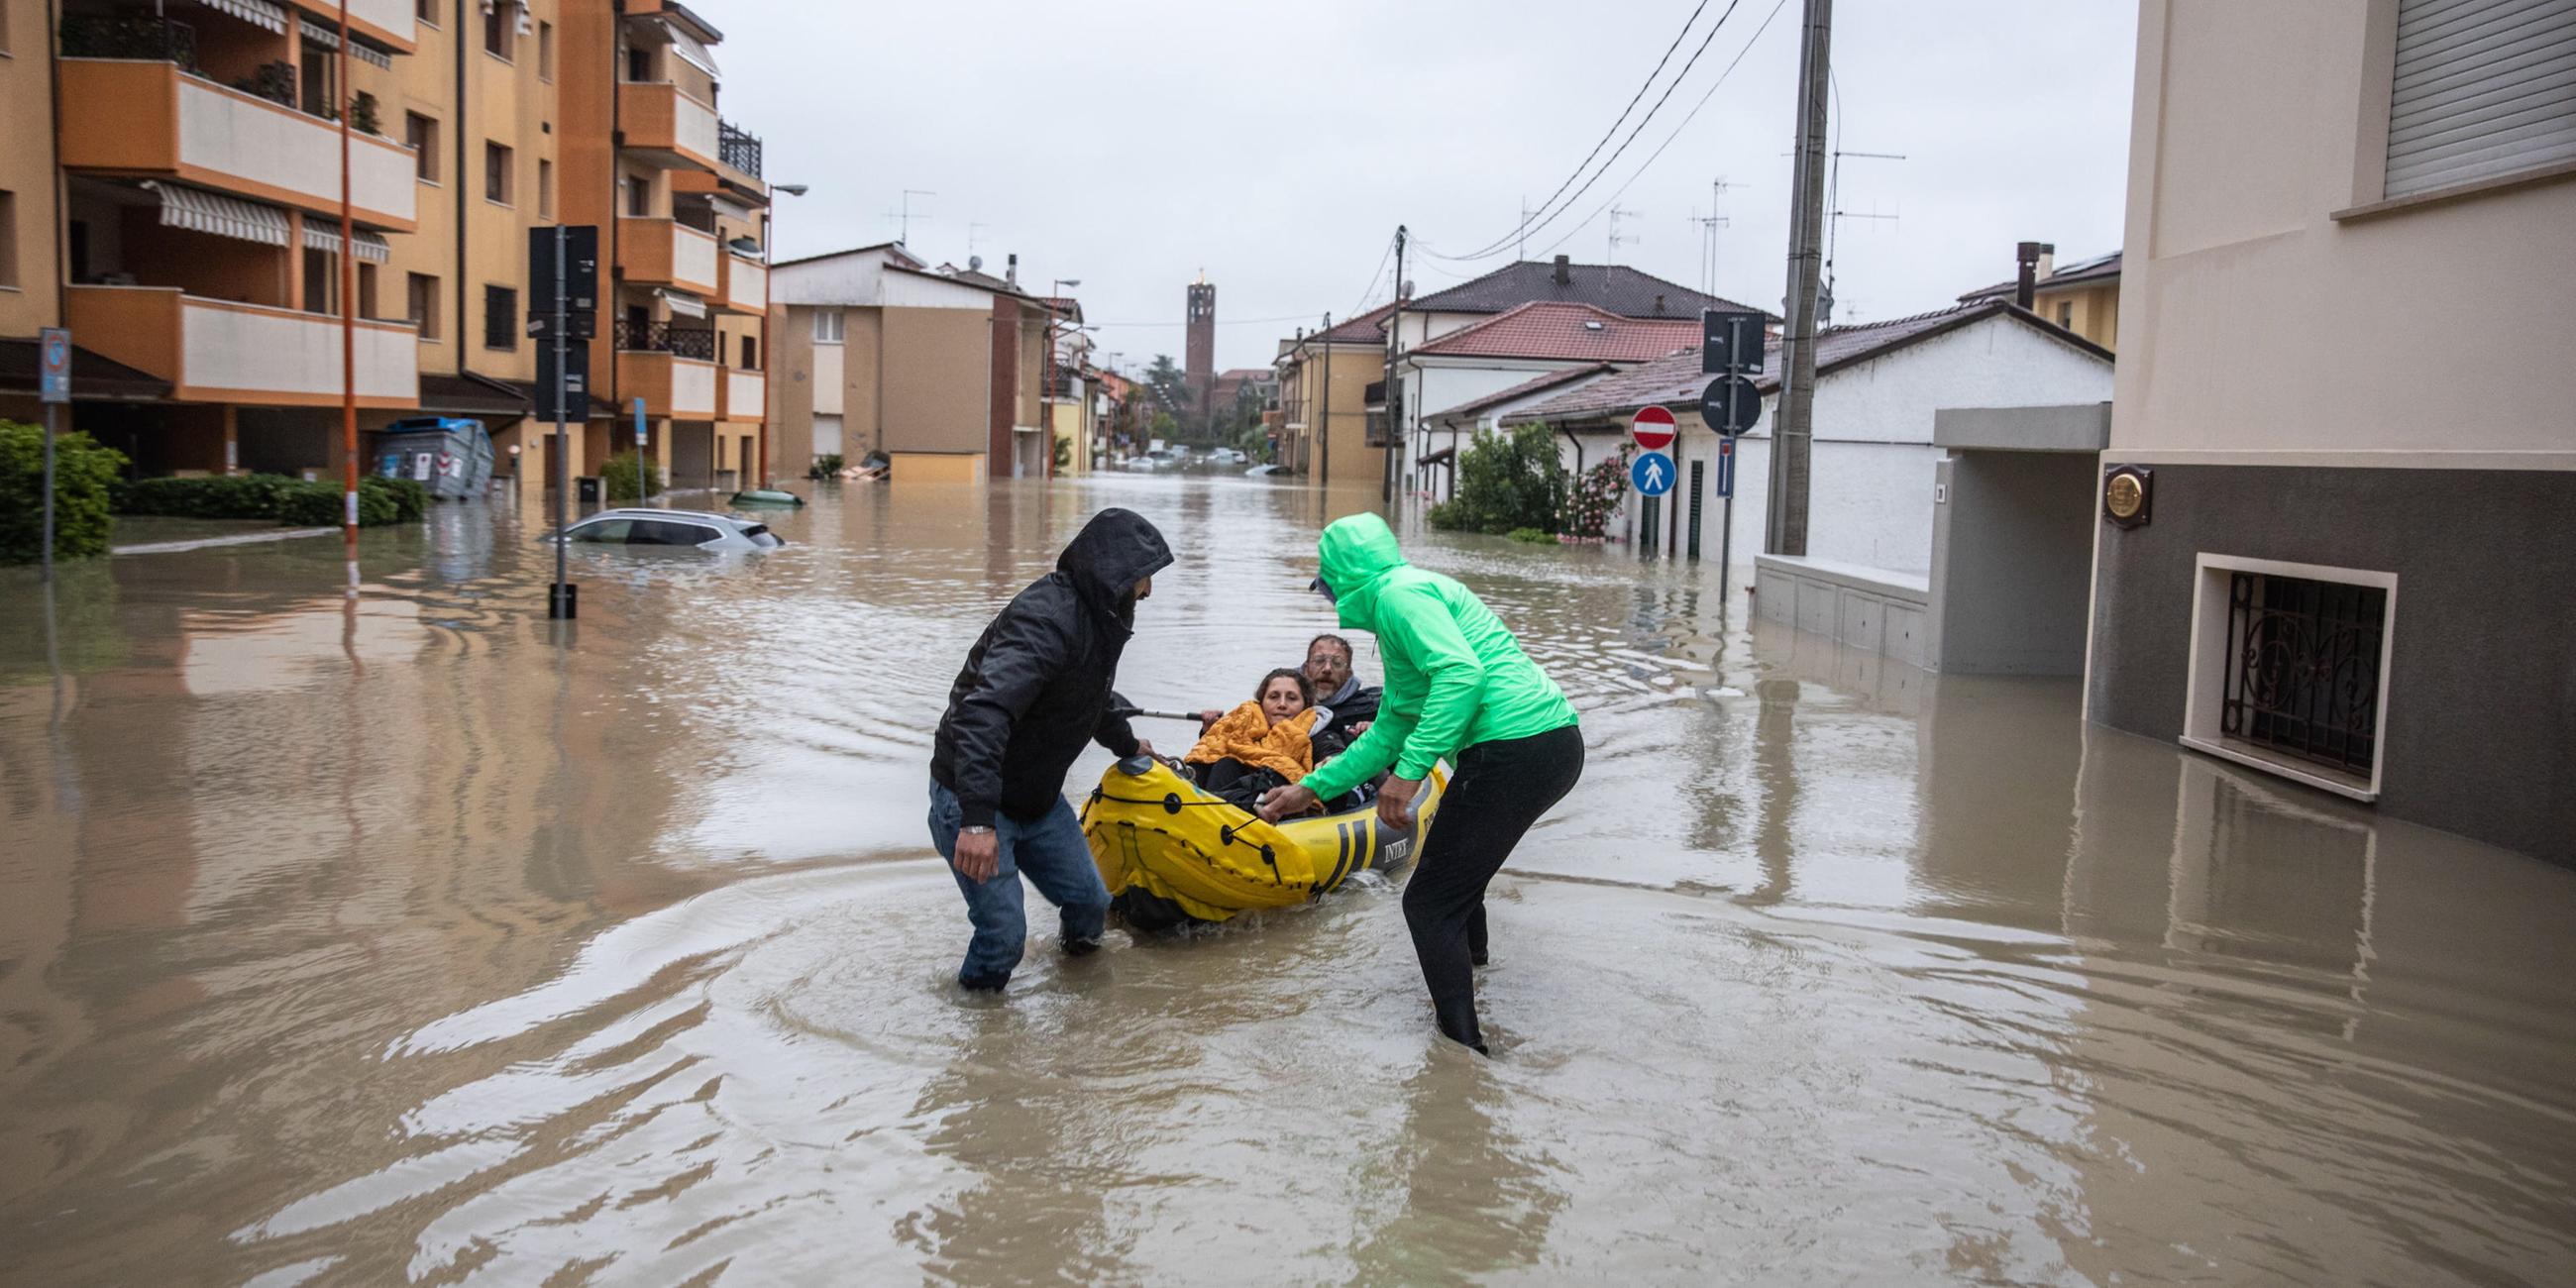 Zwei Männer ziehen Schlauchboot hinter sich her bei Hochwasser in Norditalien